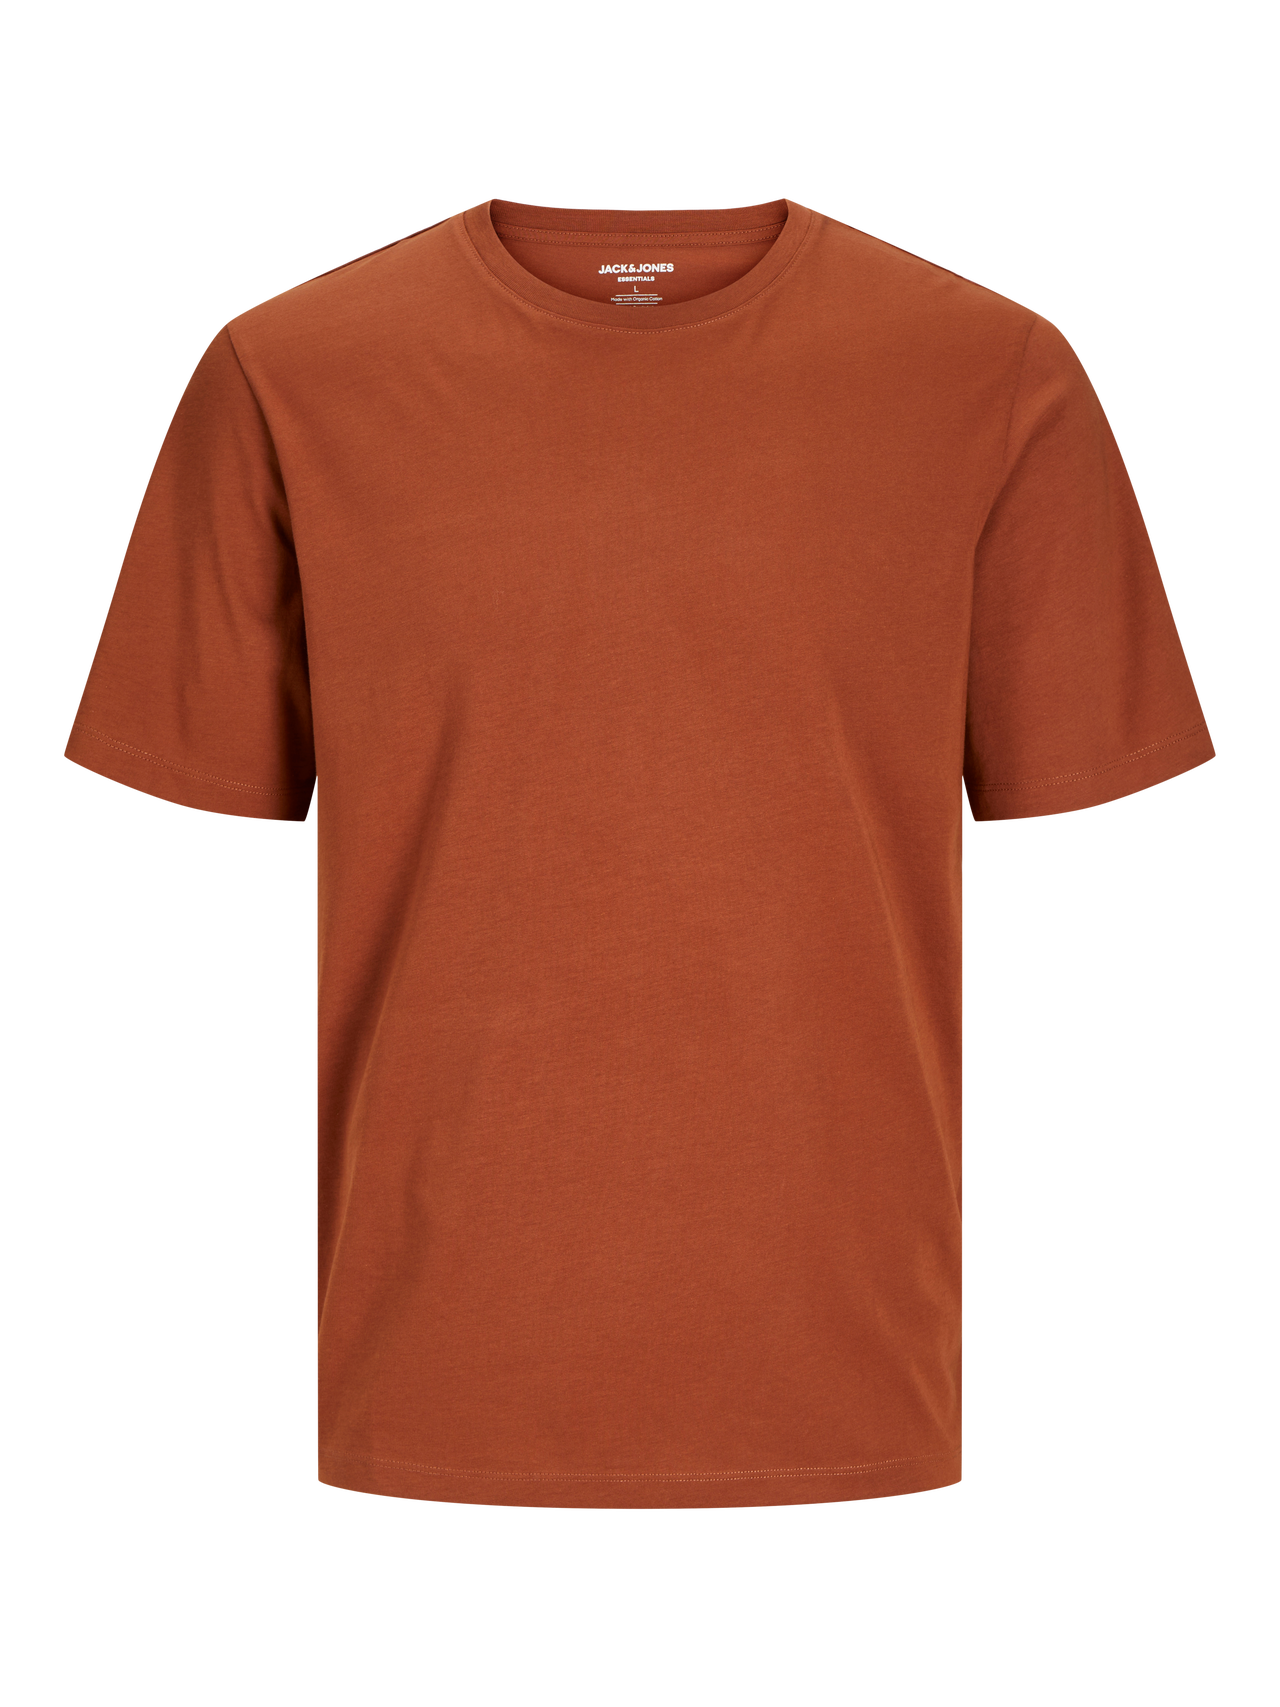 Jack & Jones Camiseta Liso Cuello redondo -Mocha Bisque - 12156101